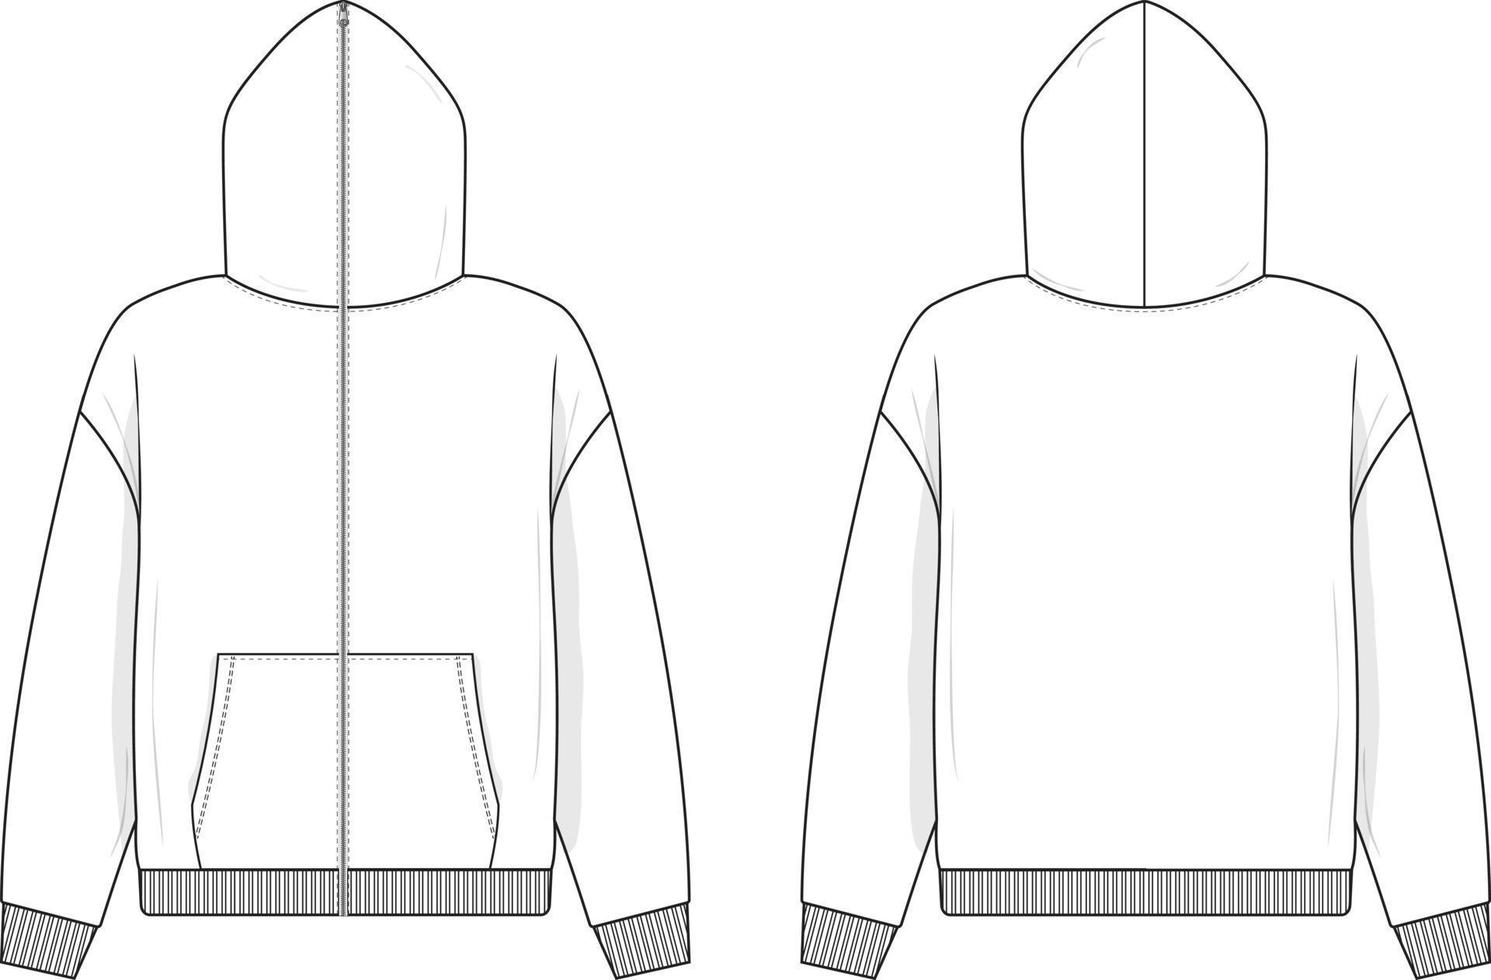 hoodie sweatshirt met volledige ritssluiting plat technische tekening illustratie mock-up sjabloon voor ontwerp en tech packs mannen of unisex mode cad streetwear vector